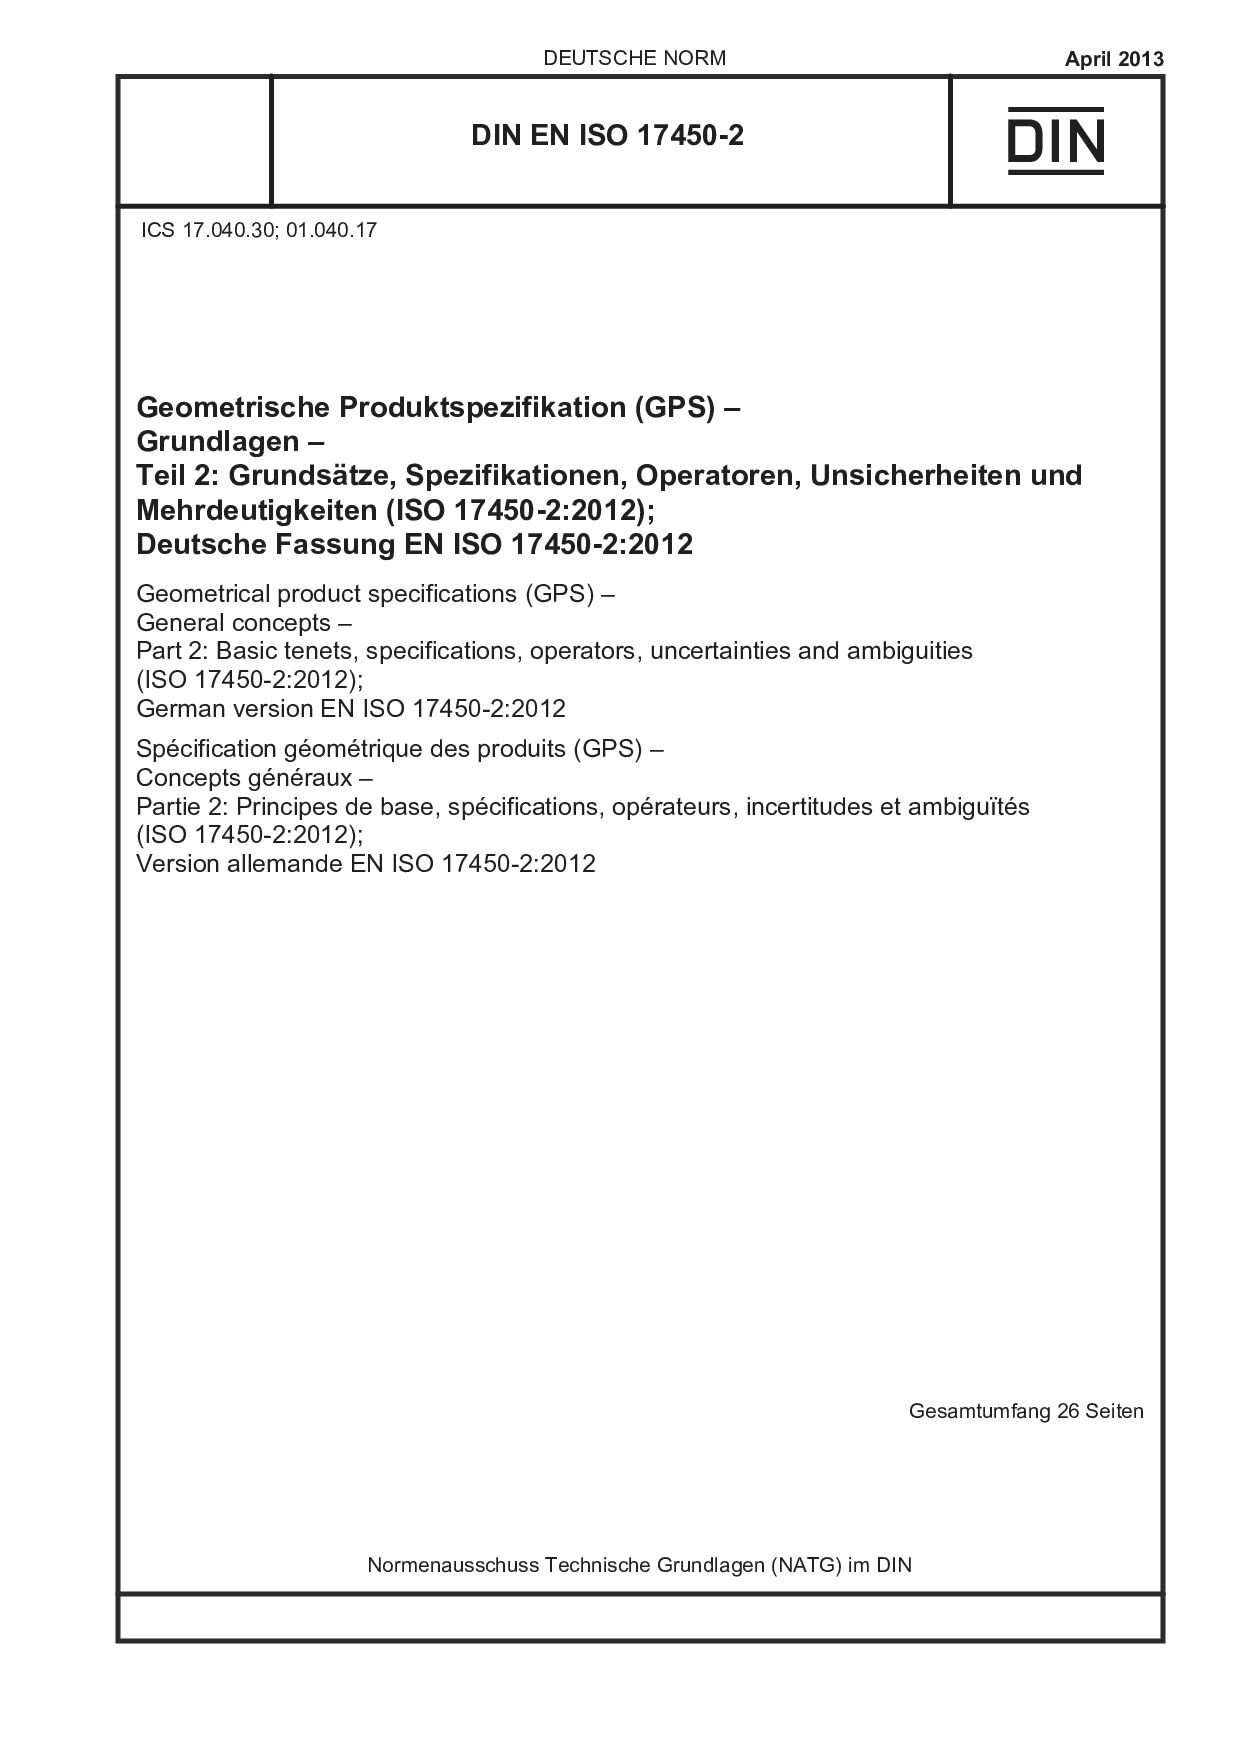 DIN EN ISO 17450-2:2013